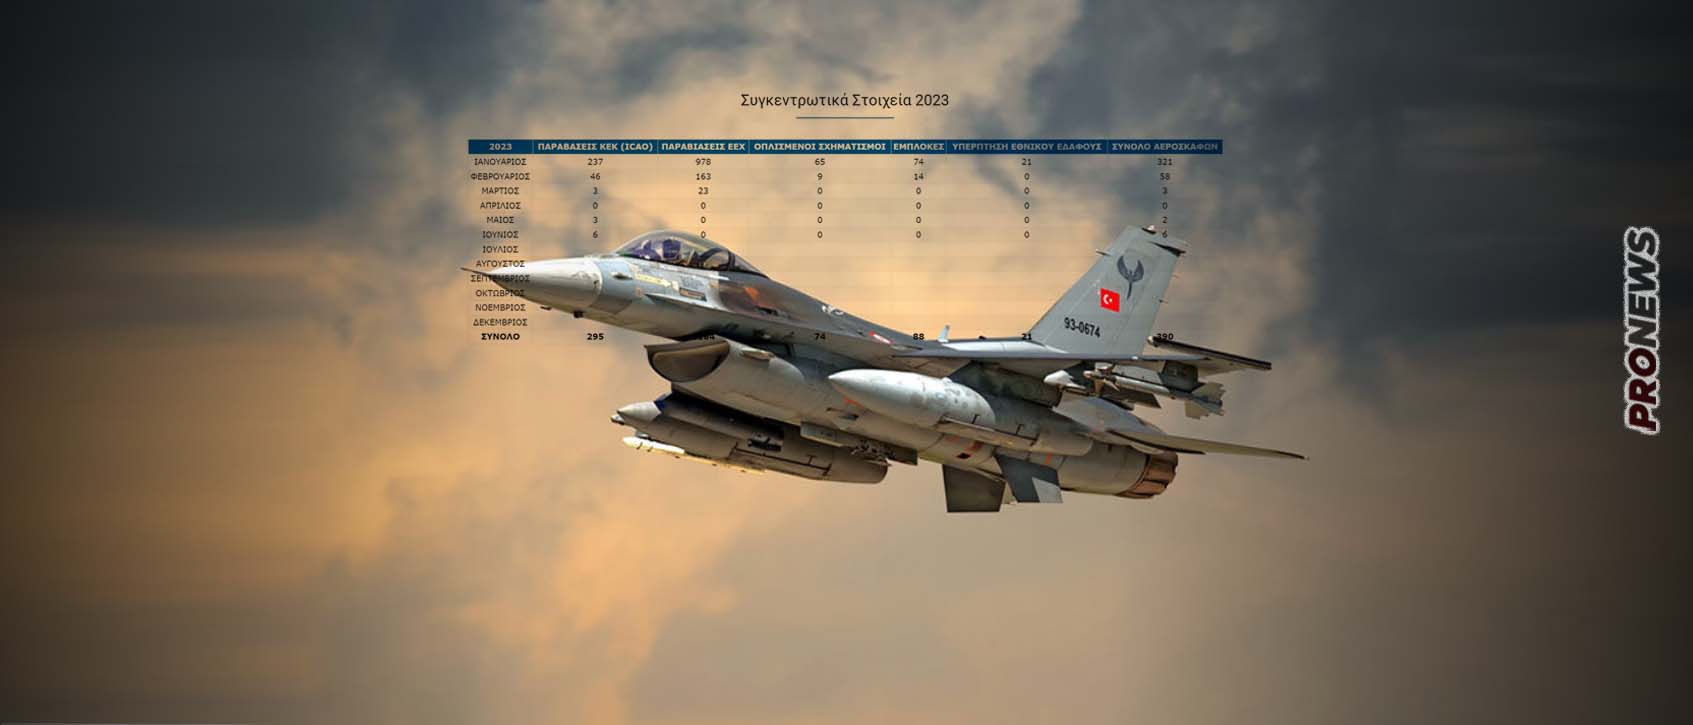 Αποκαλυπτικός πίνακας: Οι φορές που η Τουρκία χρησιμοποίησε F-16 κατά της Ελλάδας – Στην Αθήνα πιστεύουν τον Ρ.Τ.Ερντογάν